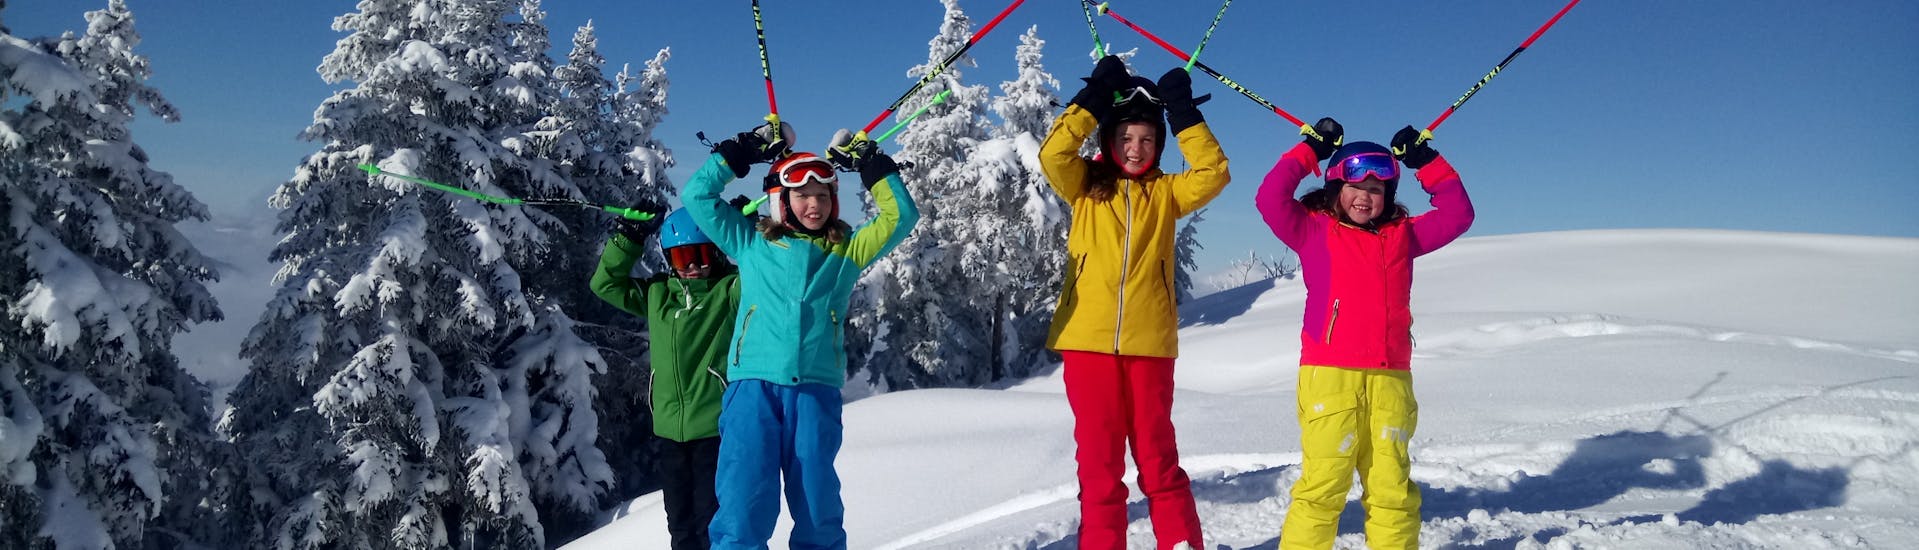 Lezioni private di sci per bambini a partire da 4 anni per tutti i livelli.